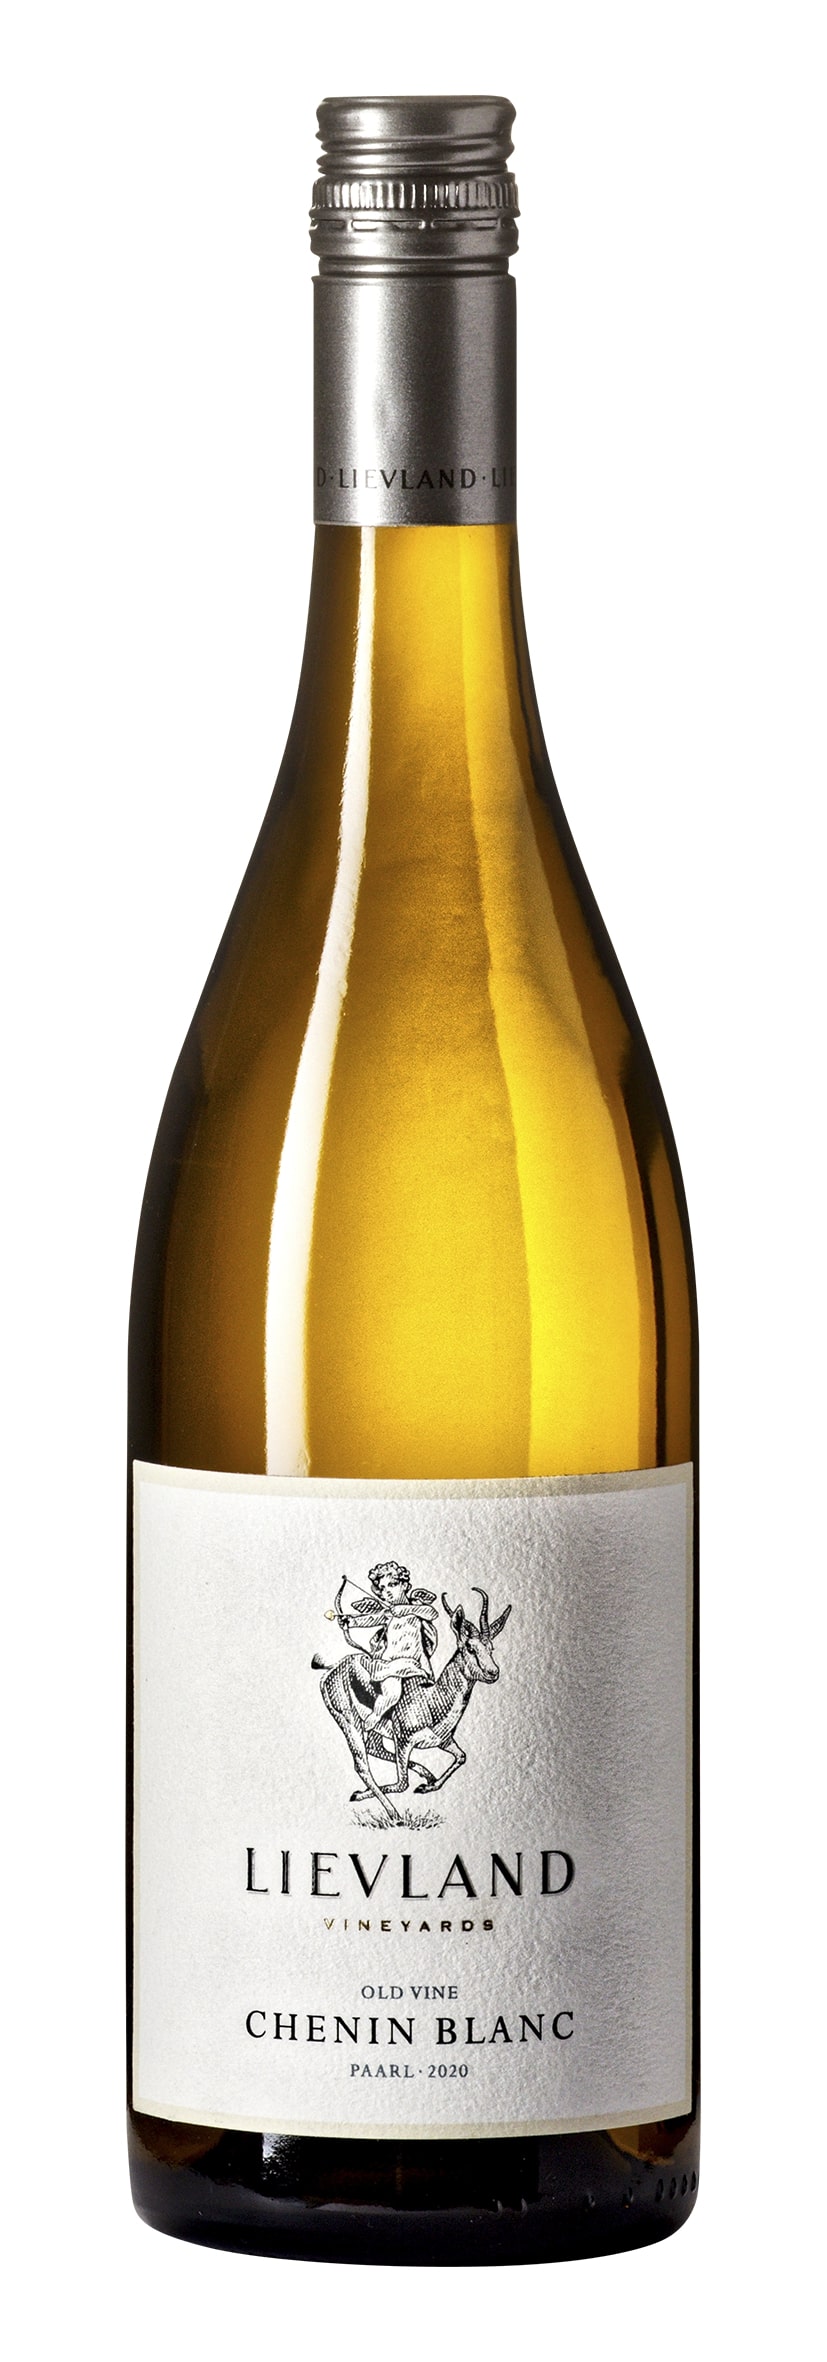 W.O. Paarl Chenin Blanc Old Vine 2020